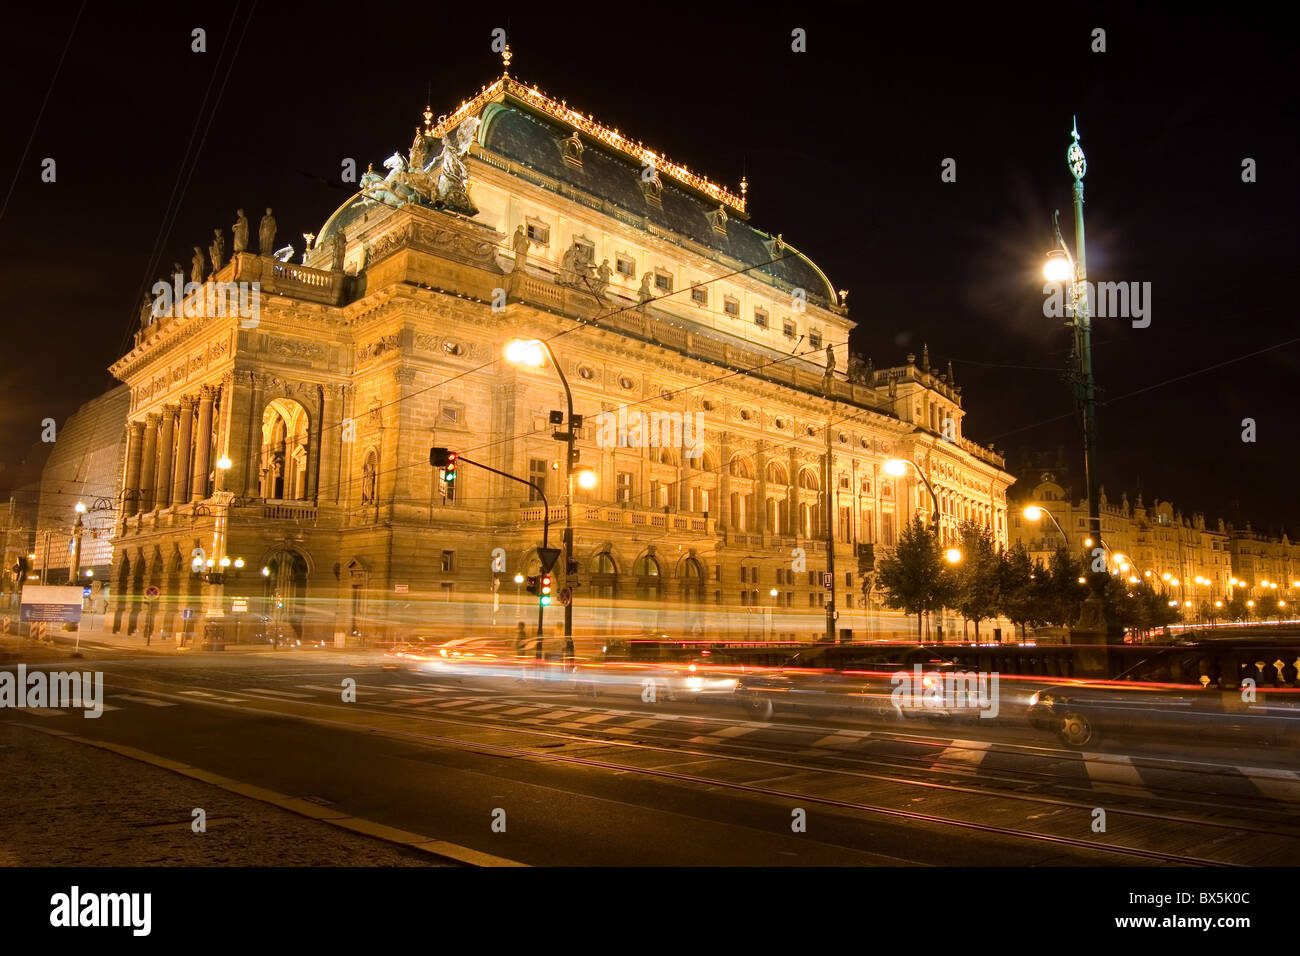 Tschechisches Nationaltheater bei Nacht - Prag Stockfoto